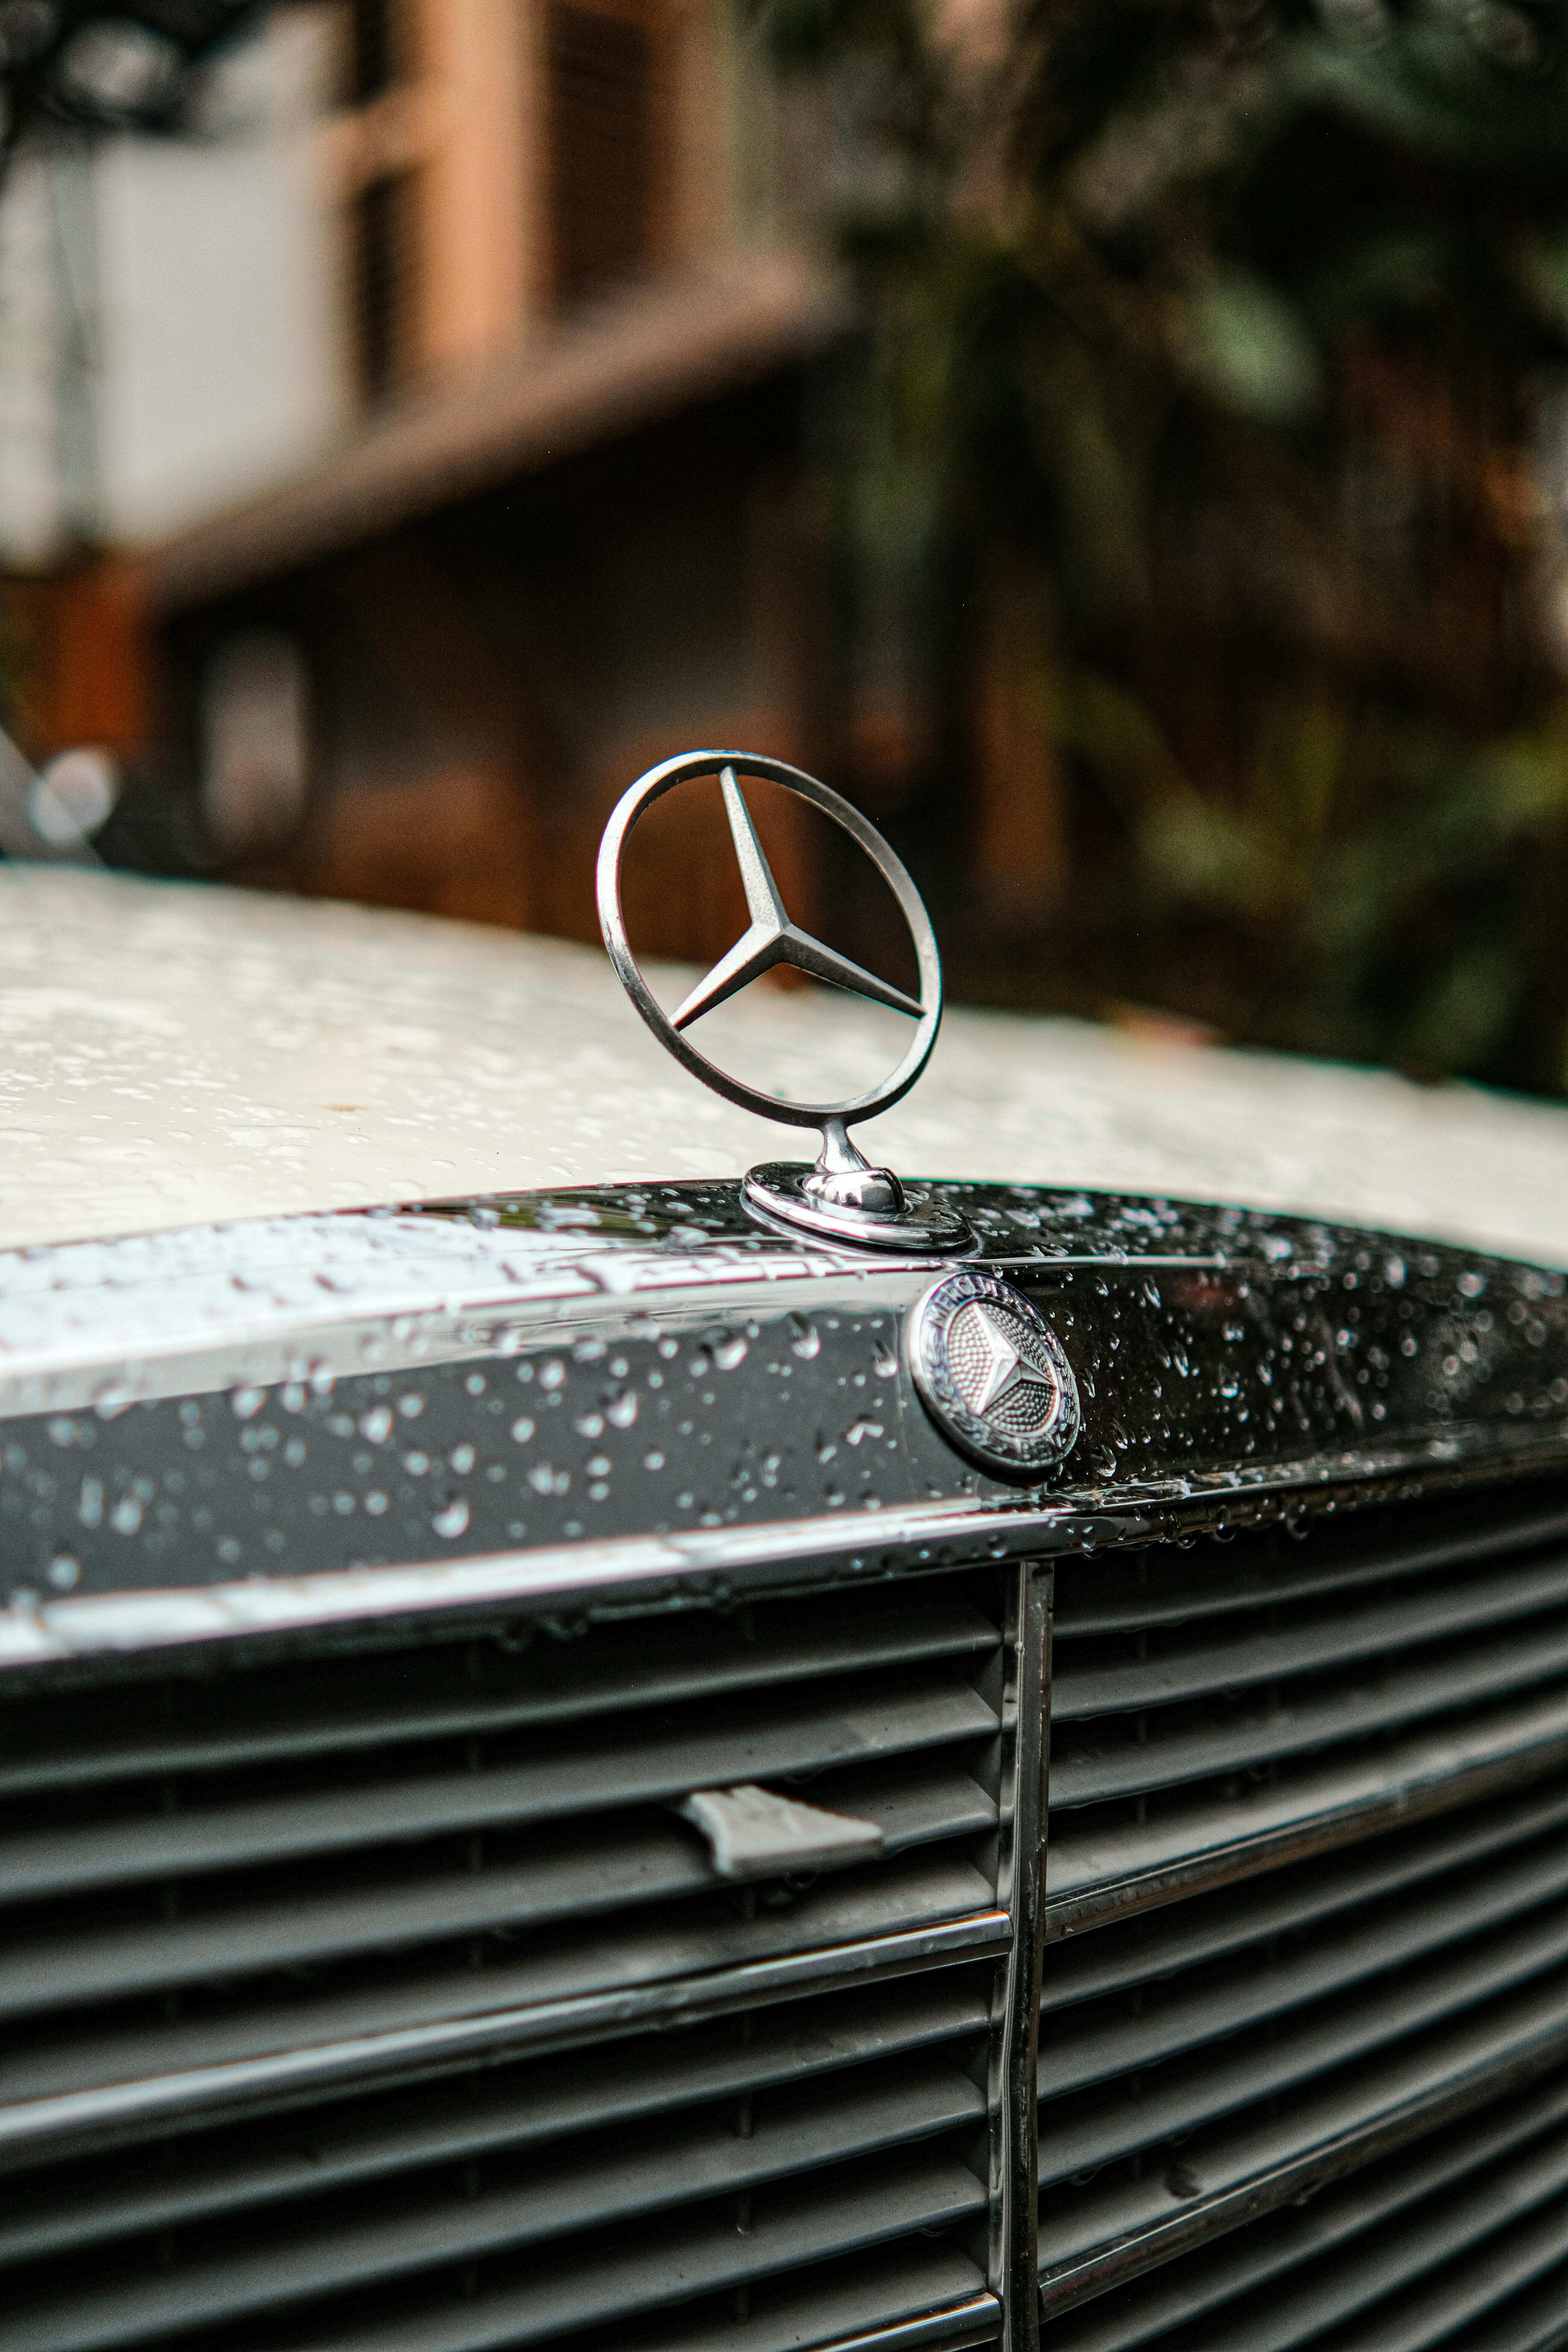 Xe Hơi Mercedes Gây Xúc Động Mạnh - Ảnh miễn phí trên Pixabay - Pixabay